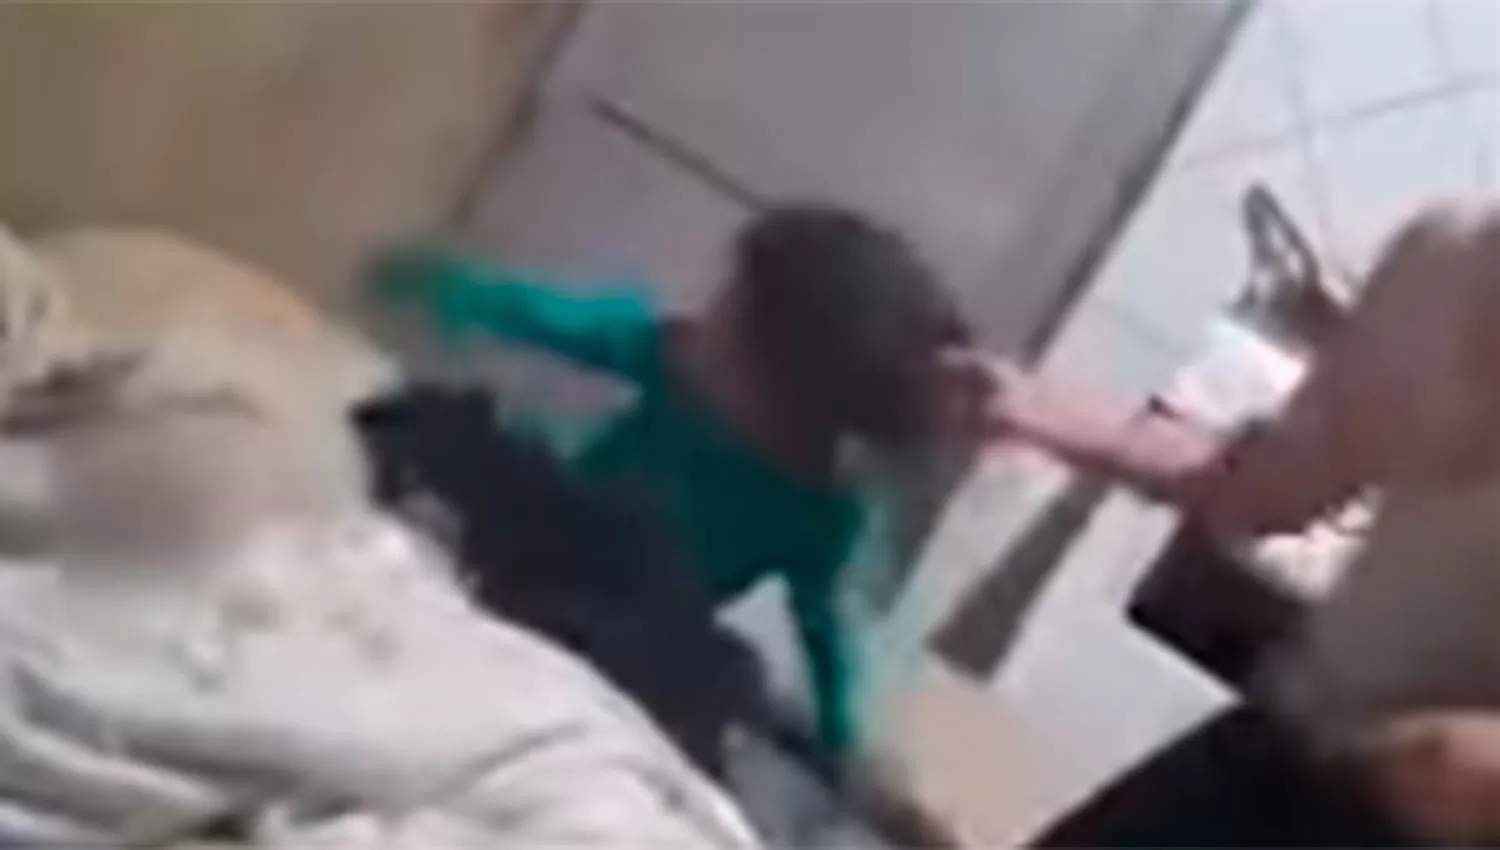 Una mujer fue filmada golpeando brutalmente a su hija por una tablet